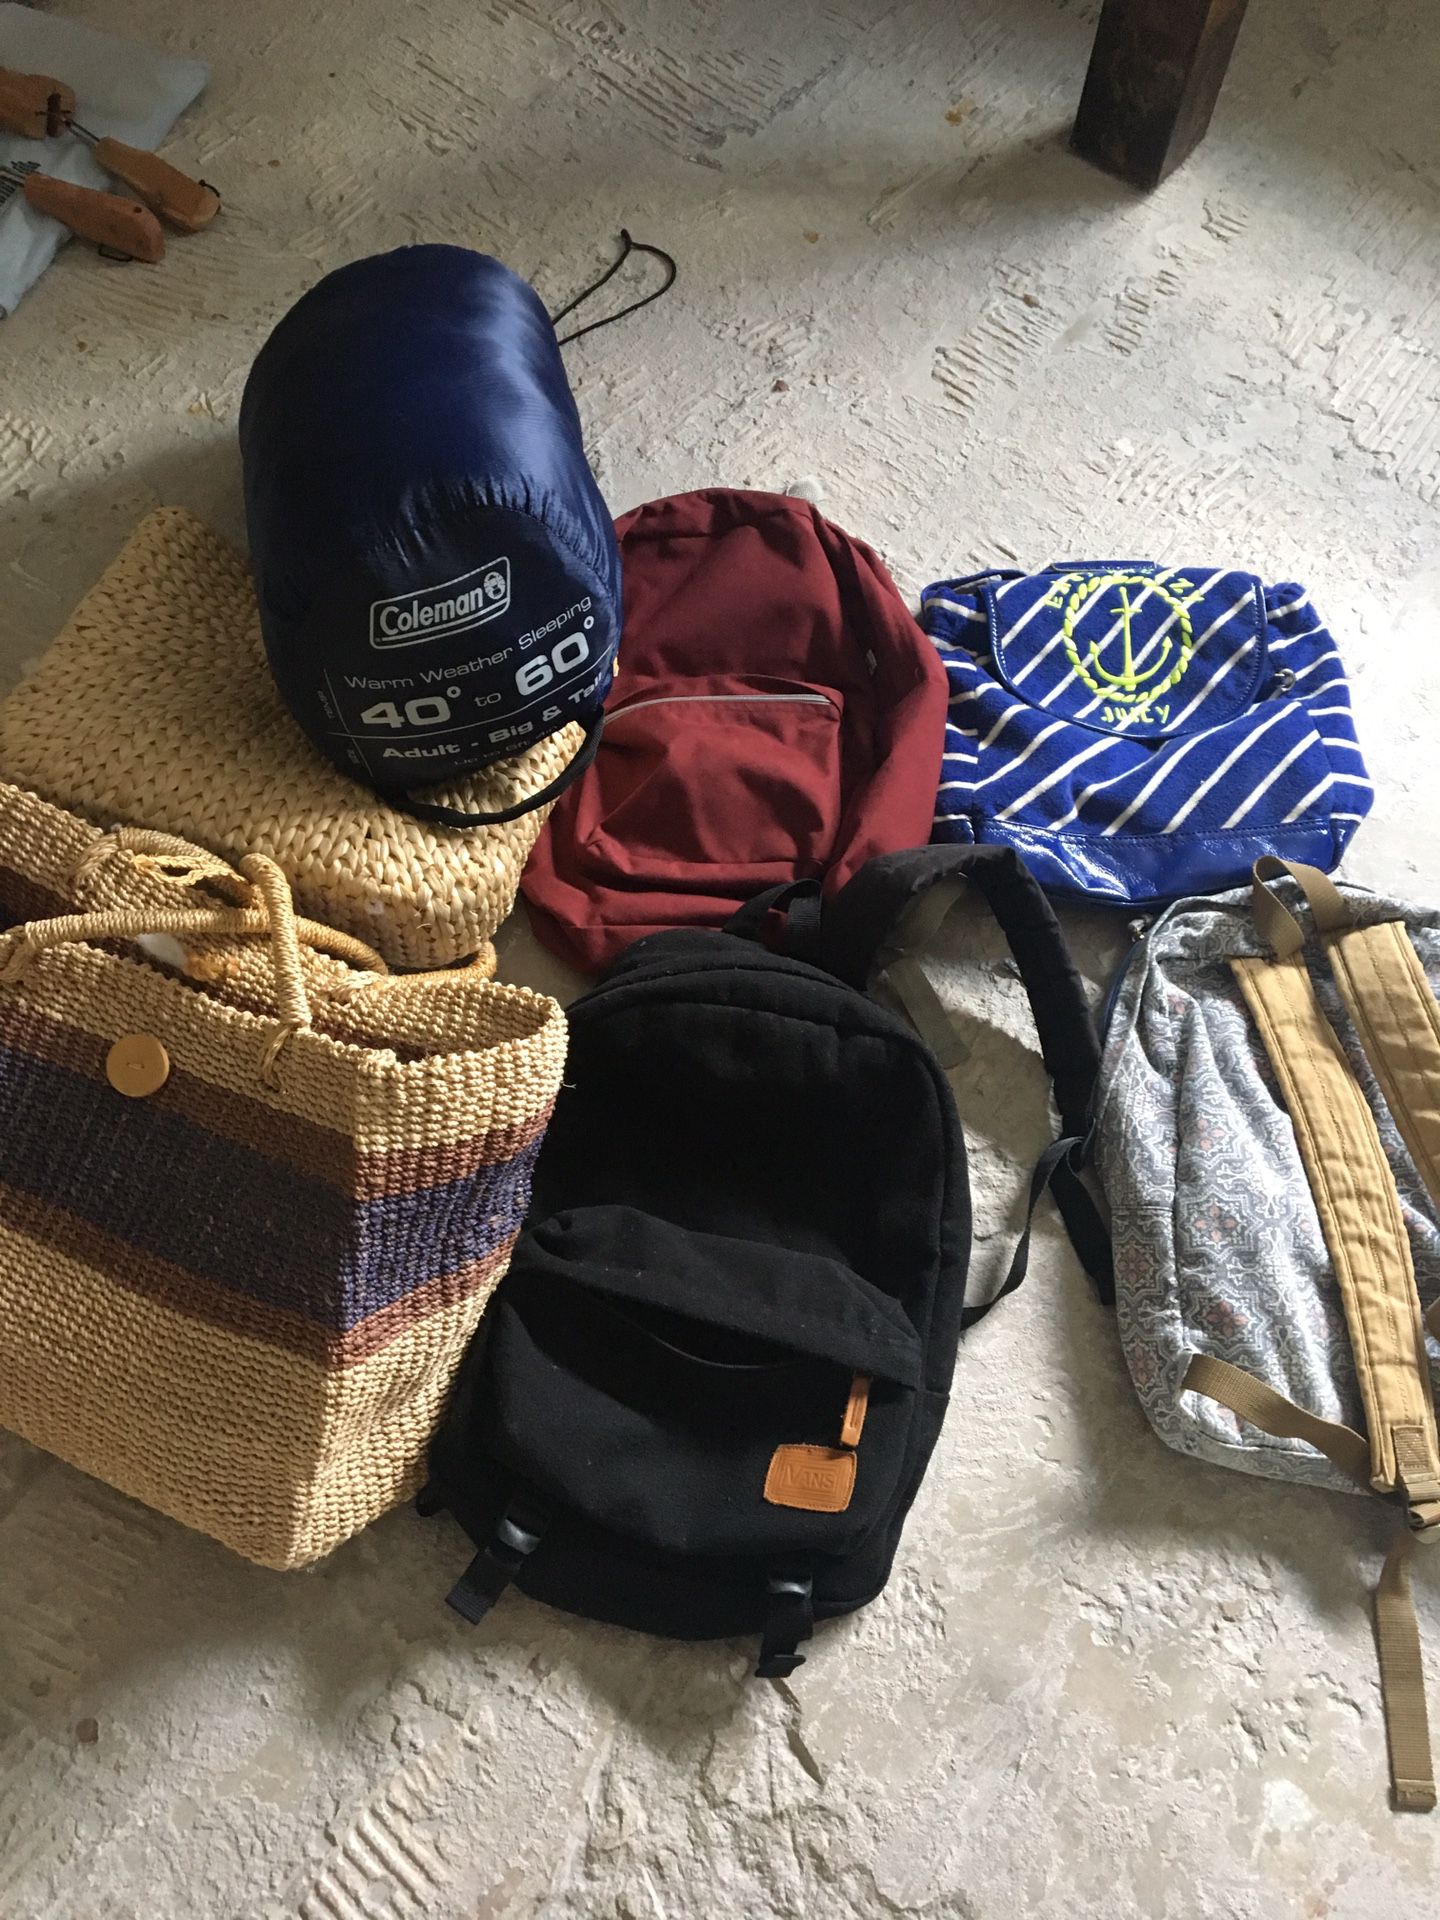 Bookbags and sleeping bag